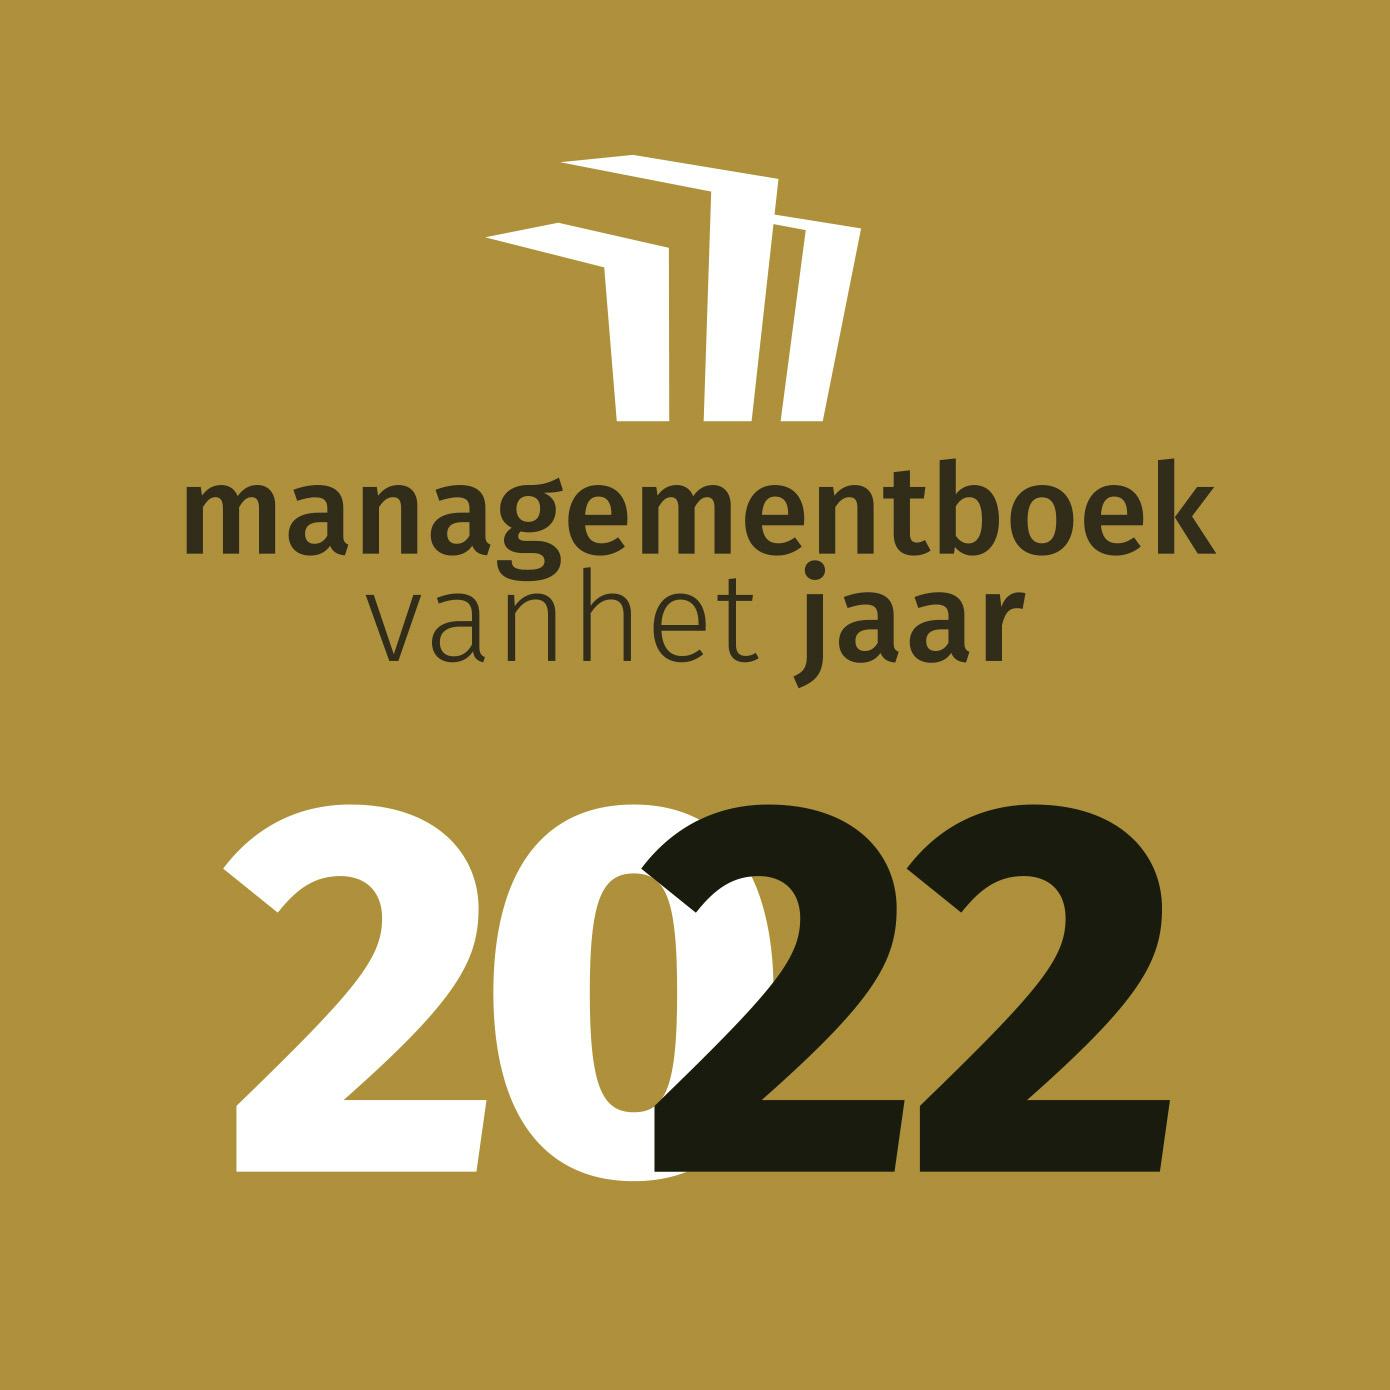 Wat wordt het managementboek van 2022?